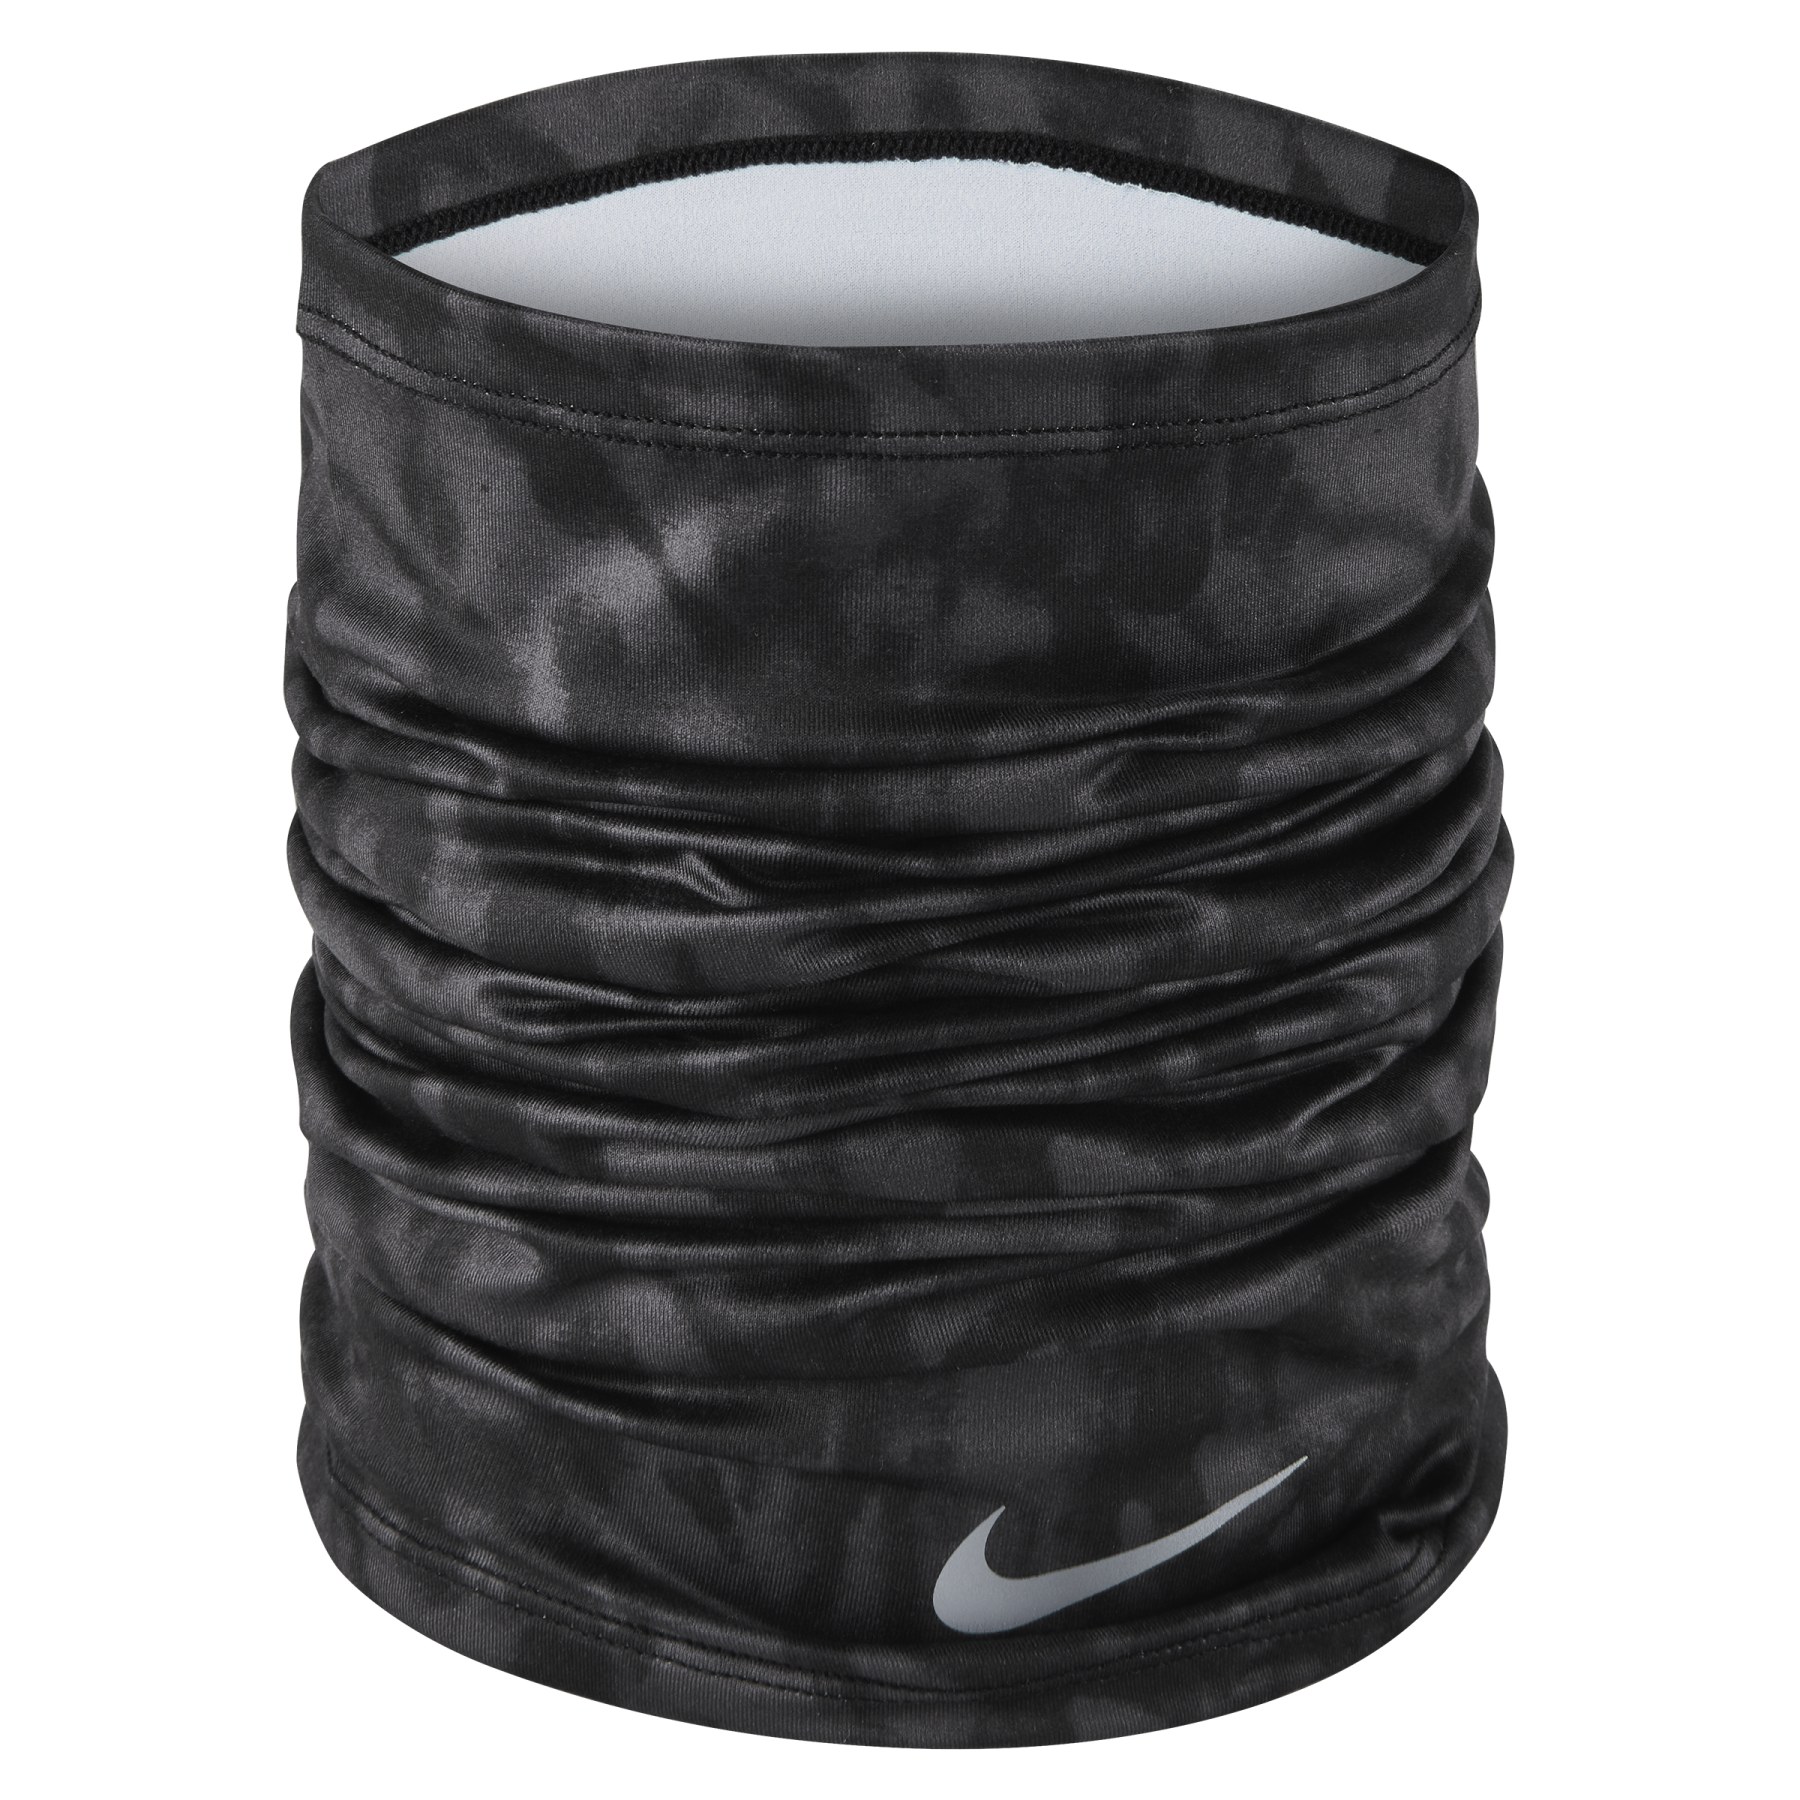 Immagine prodotto da Nike DRI-Fit Wrap Multifunctional Cloth - black/silver 923